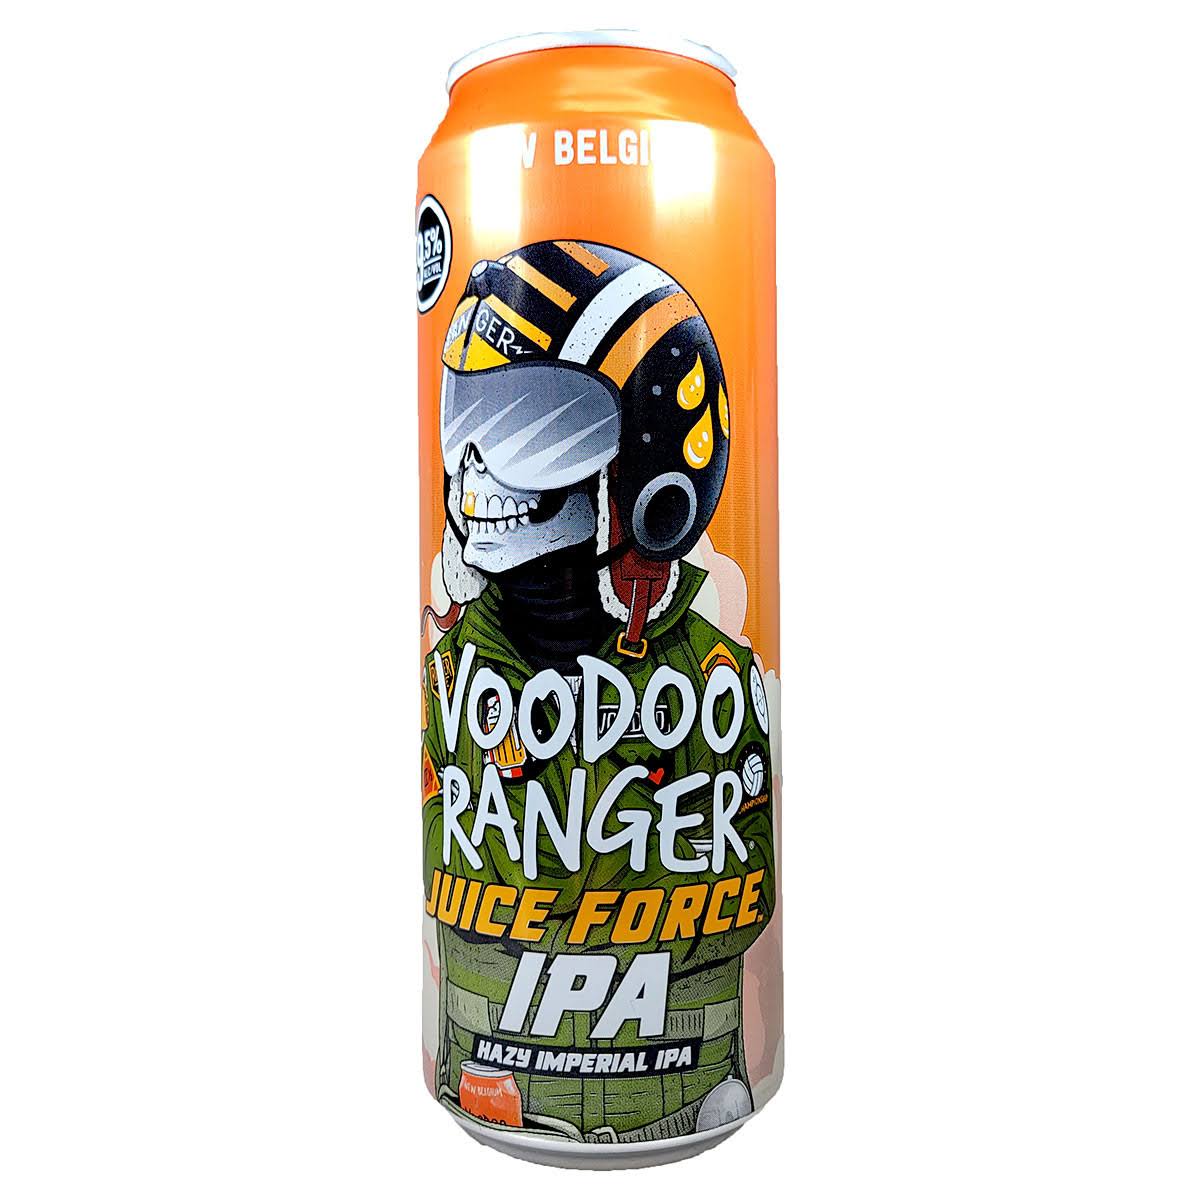 Voodoo Ranger Beer, Hazy Imperial IPA, Juice Force - 19.2 fl oz